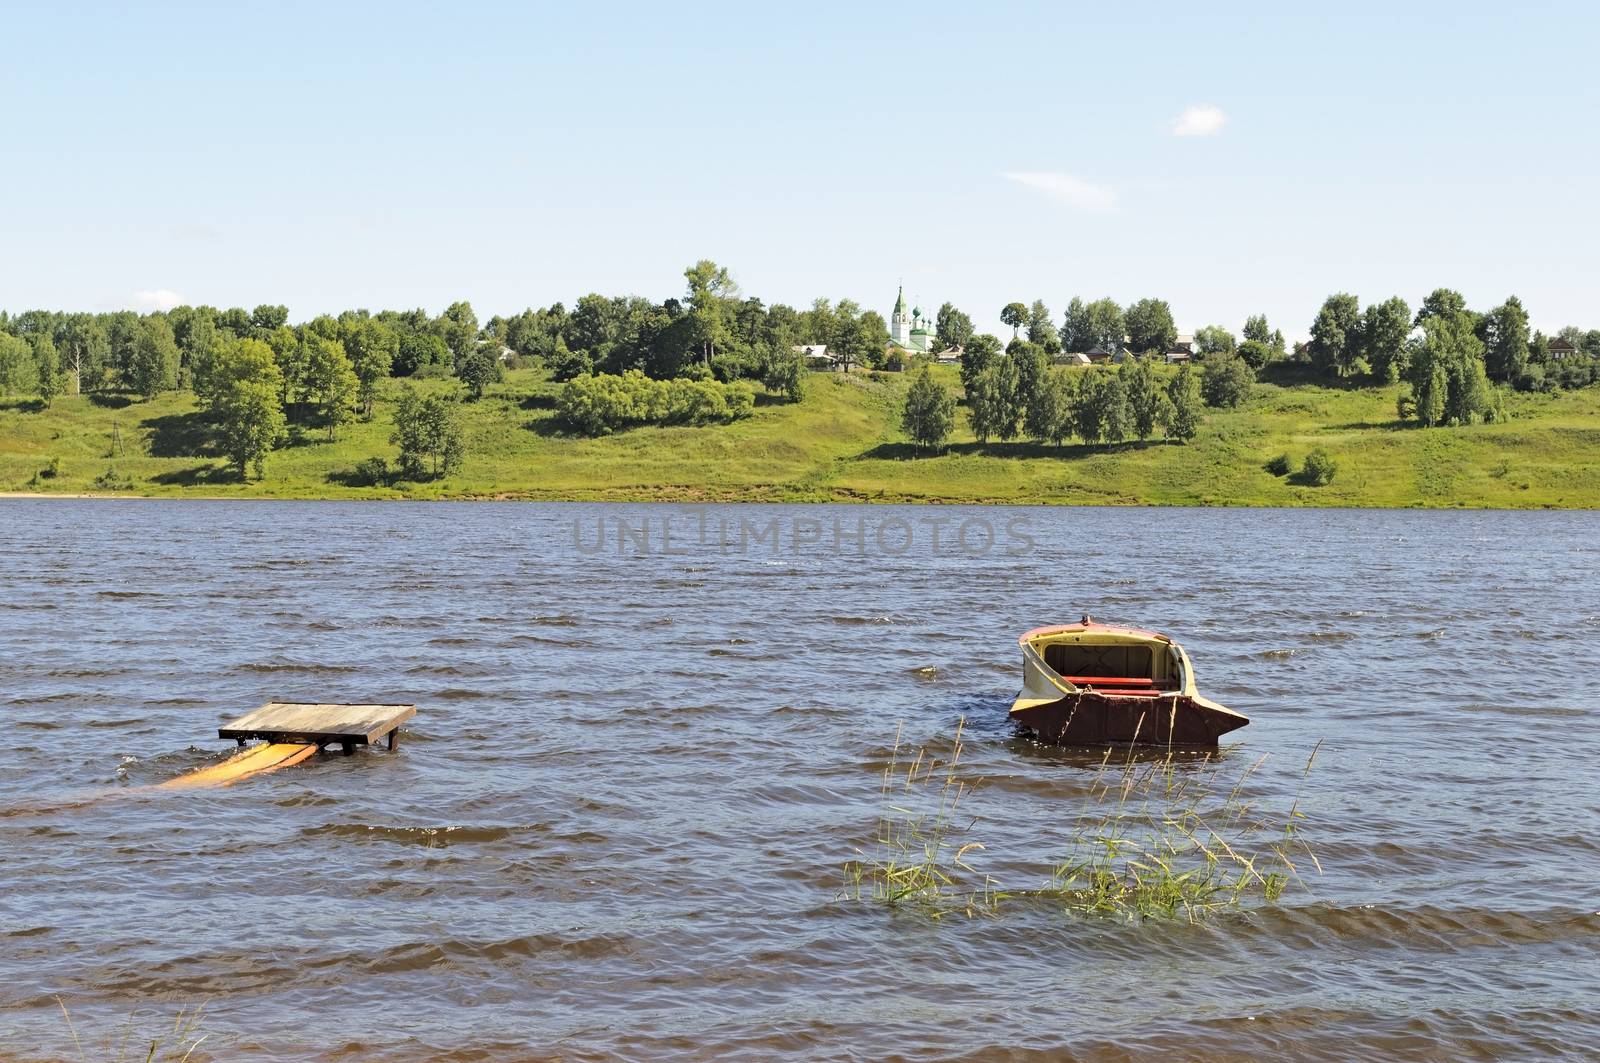 Boat near the bank of the Volga river in Tutaev, Russia